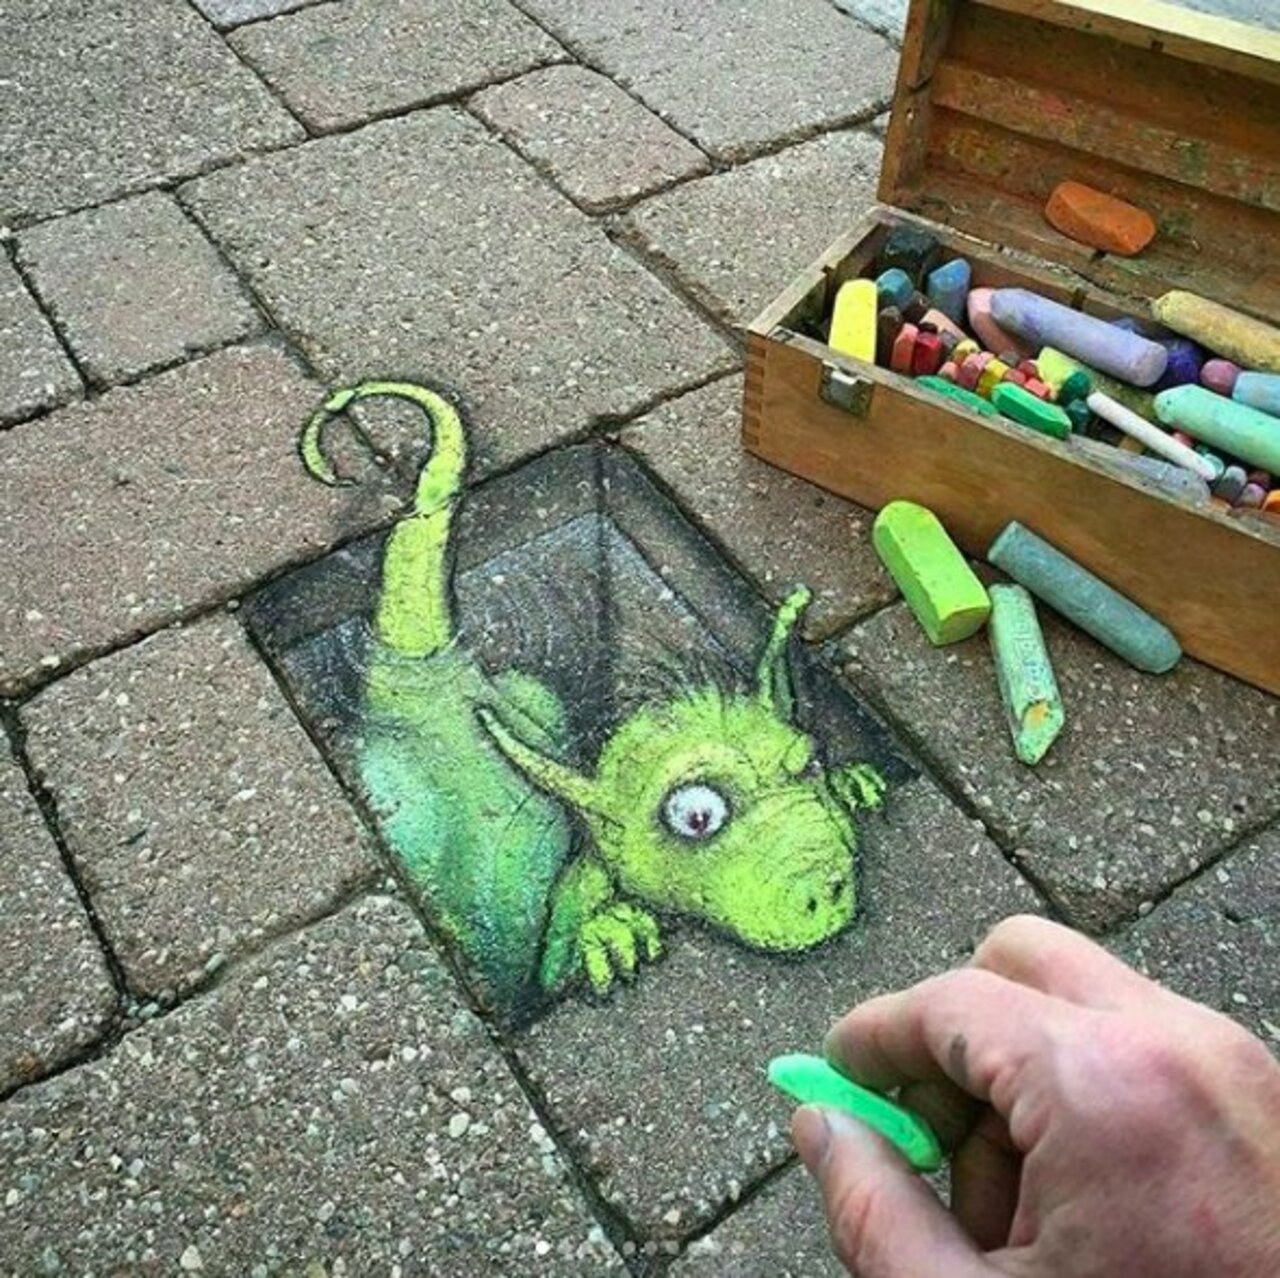 Such a cute little creature by @davidzinn_art! Hi buddy! -- #globalstreetart #streetart #art #graffiti https://t.co/frfK5xFGnz